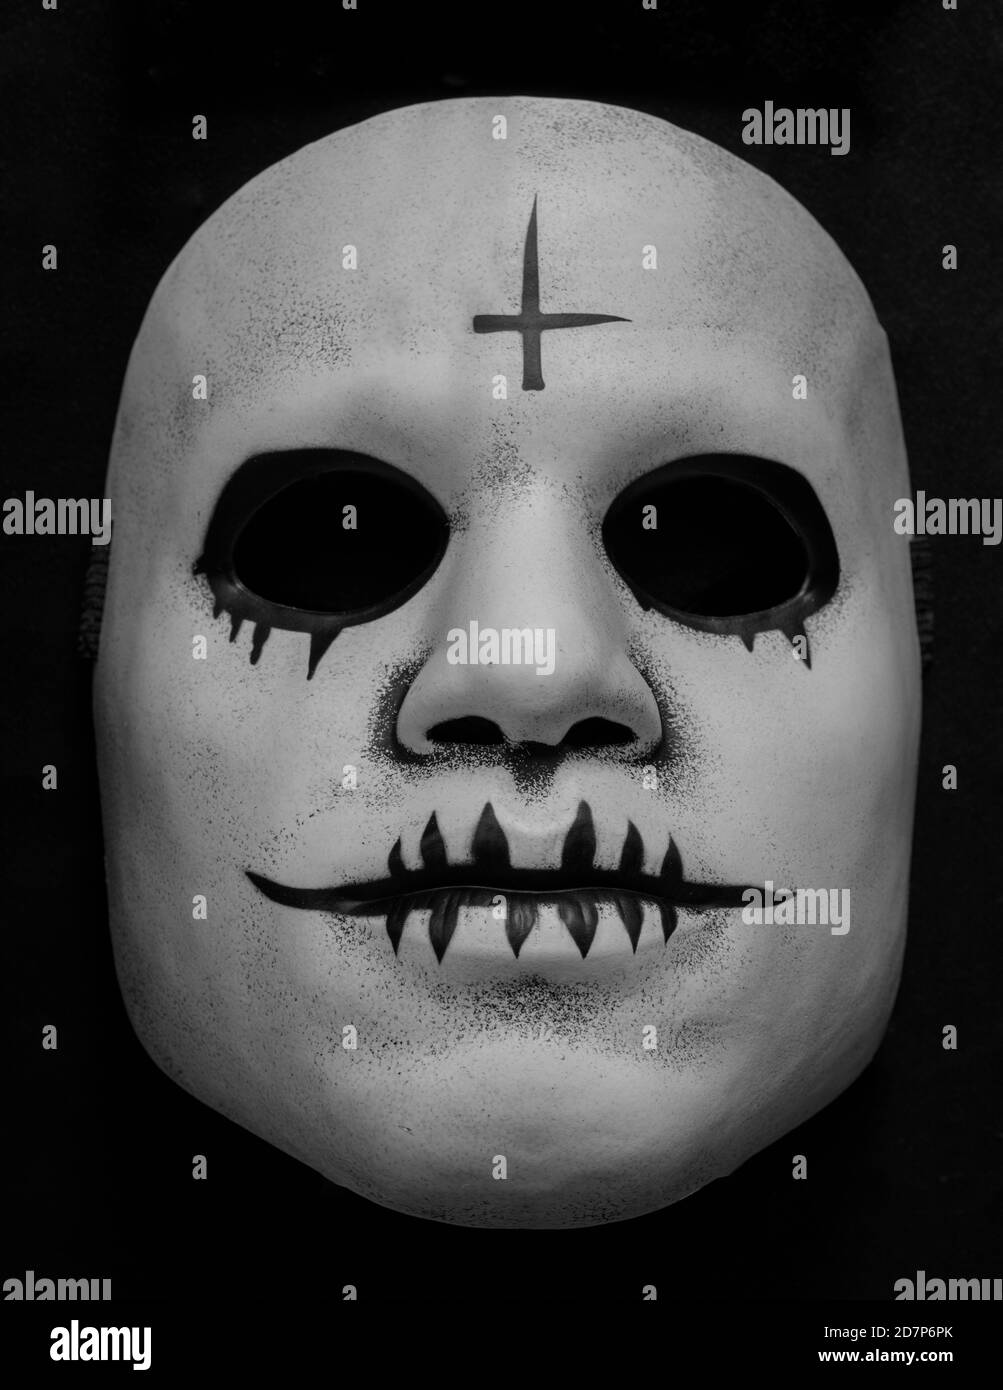 Masque de visage Killer série blanc isolé de la couleur noire Banque D'Images